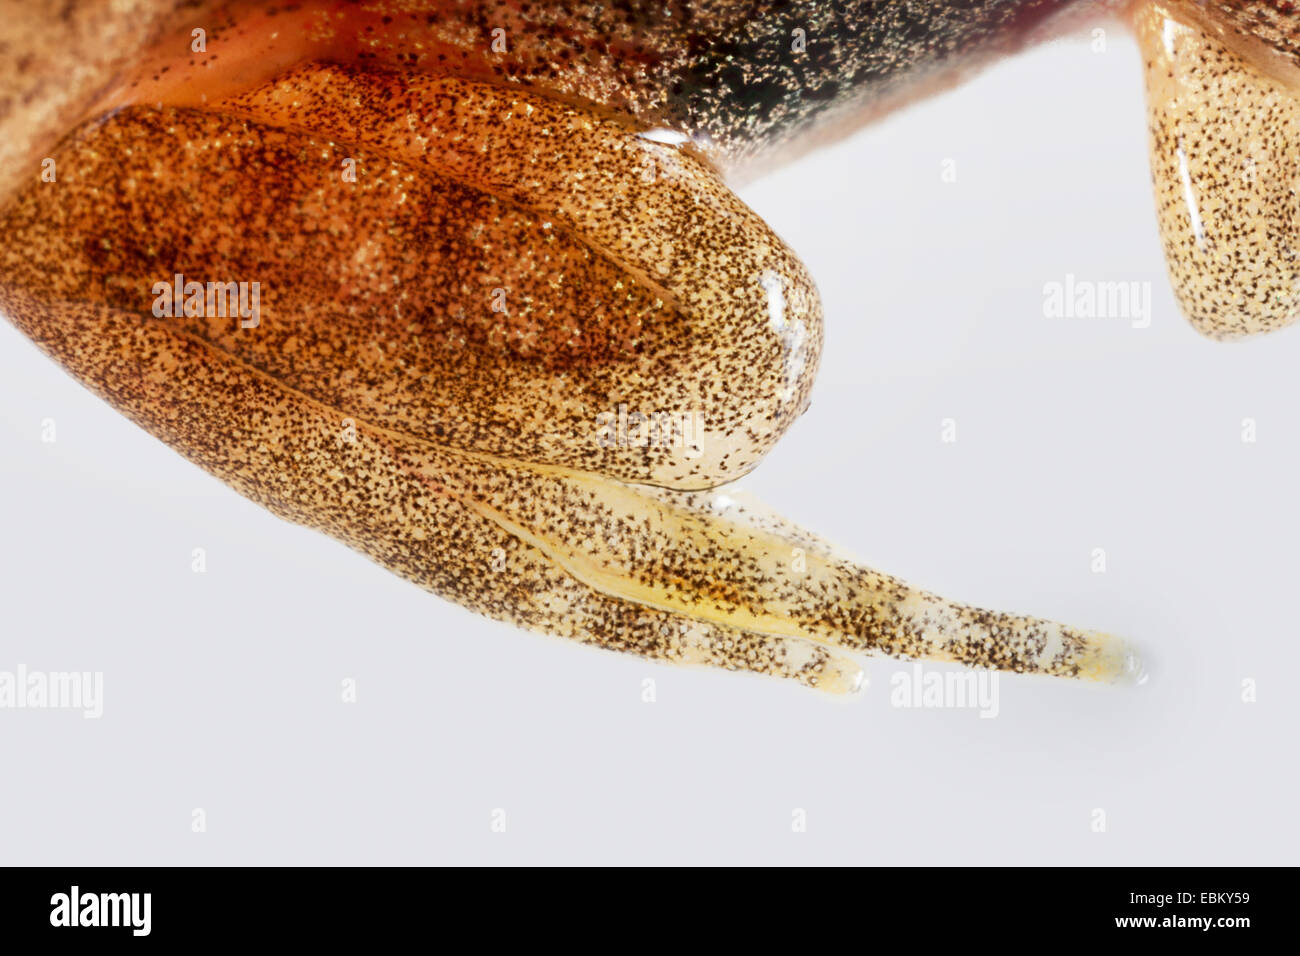 hind leg of a tadpole Rana temporaria grass frog Stock Photo